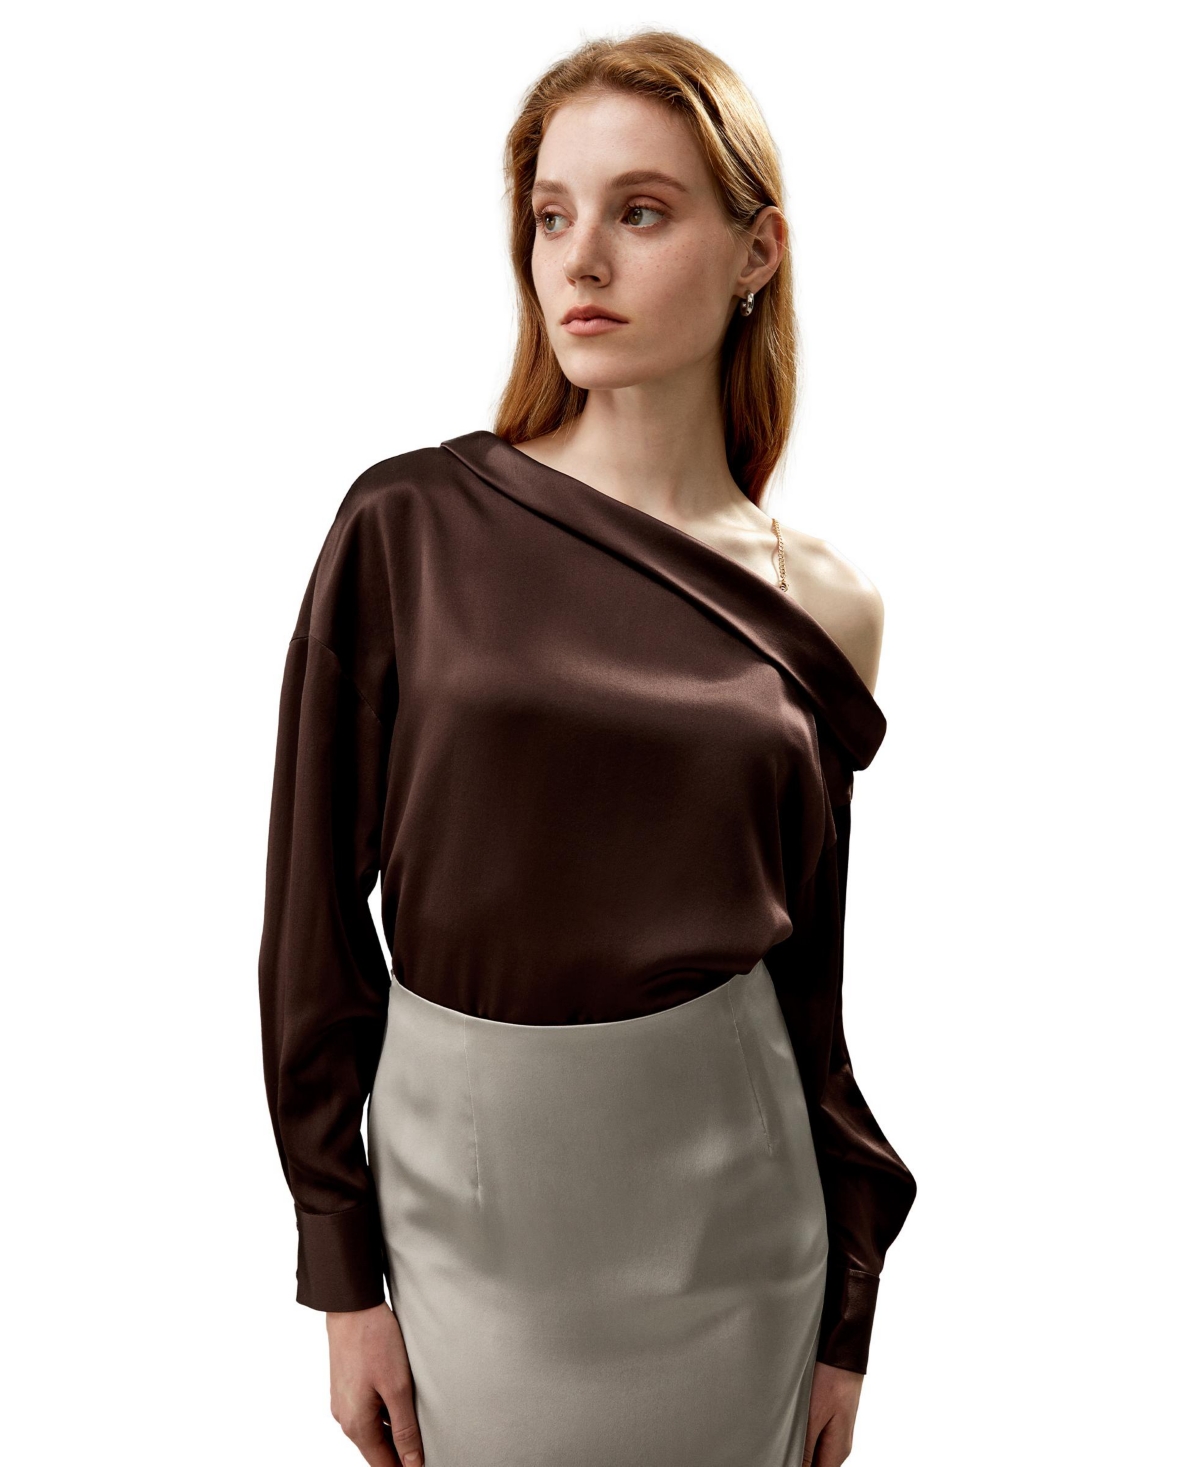 Women's Silk Chic One-Shoulder Top - Dark brown